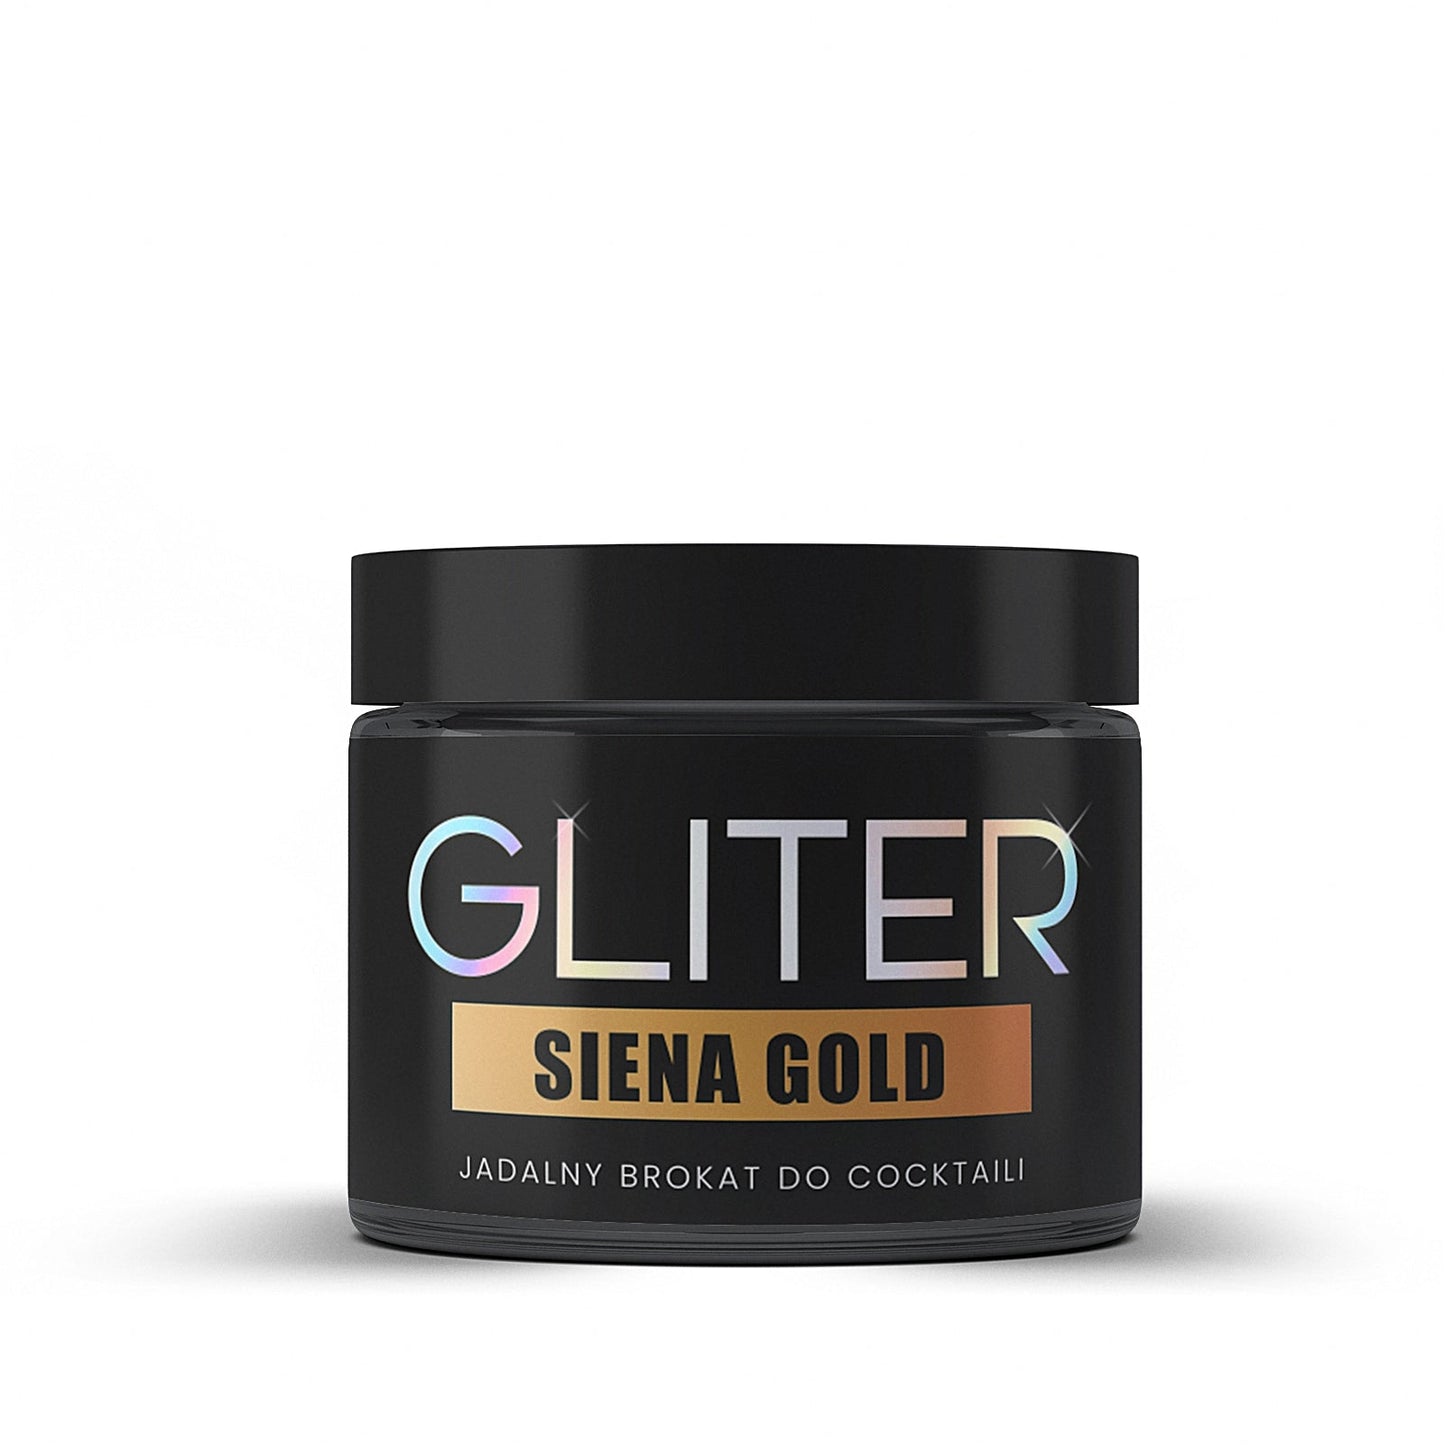 SIENA GOLD GLITER - Gliter_GLITER